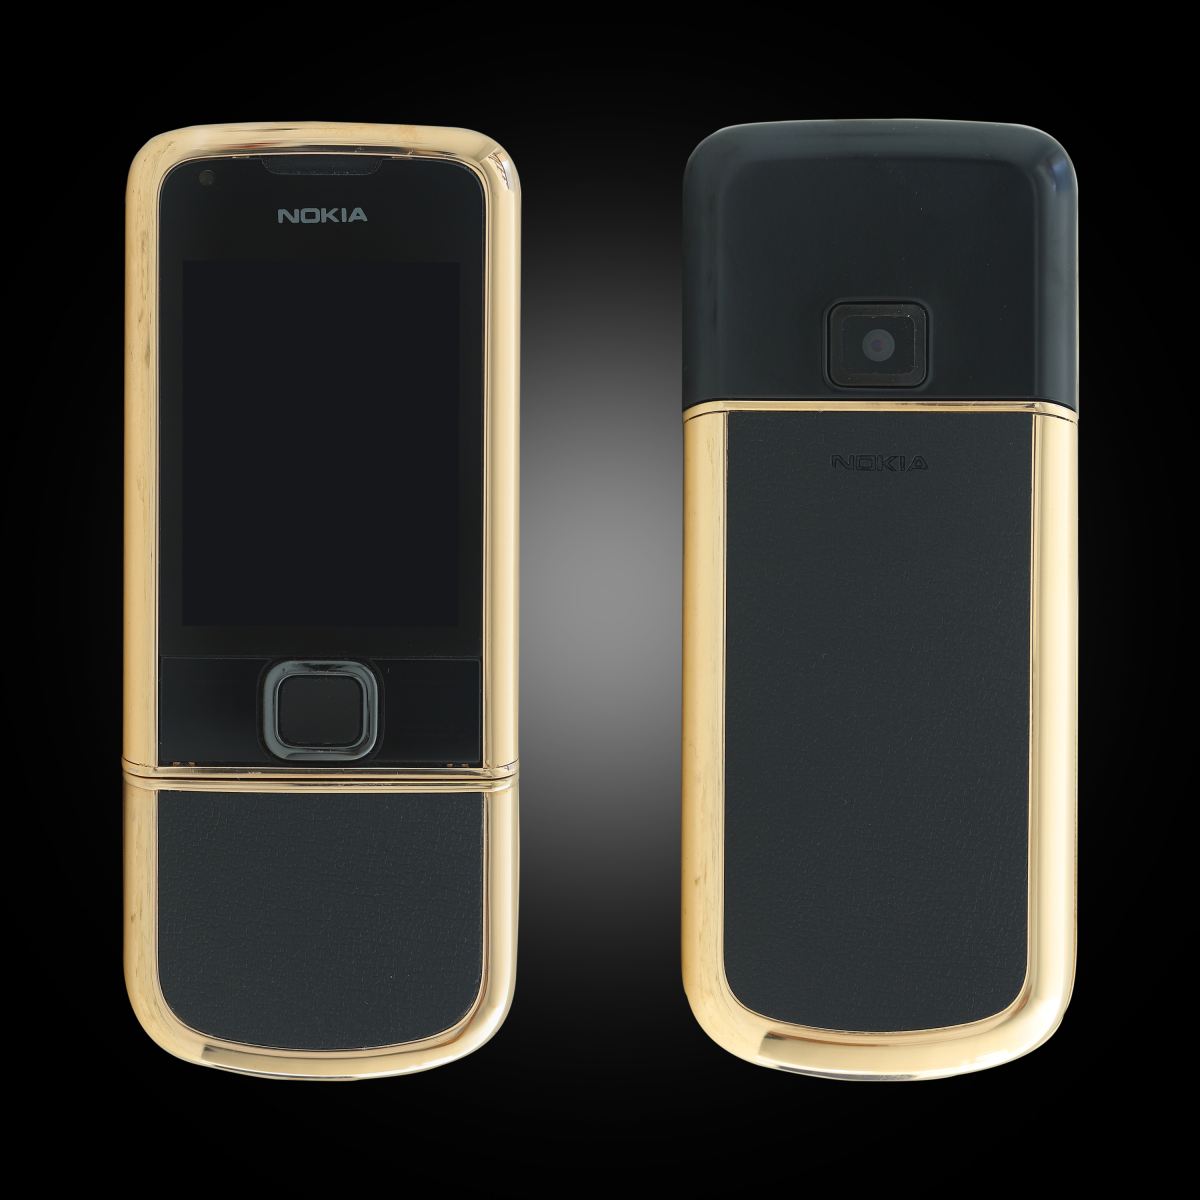 Nokia 8800E Rose Gold: Chiếc điện thoại Nokia 8800E Rose Gold là sự kết hợp hoàn hảo của đẳng cấp và vẻ đẹp tuyệt vời. Với chất liệu vàng hồng sang trọng, điều này sẽ khiến bạn nổi bật trong mọi dịp.